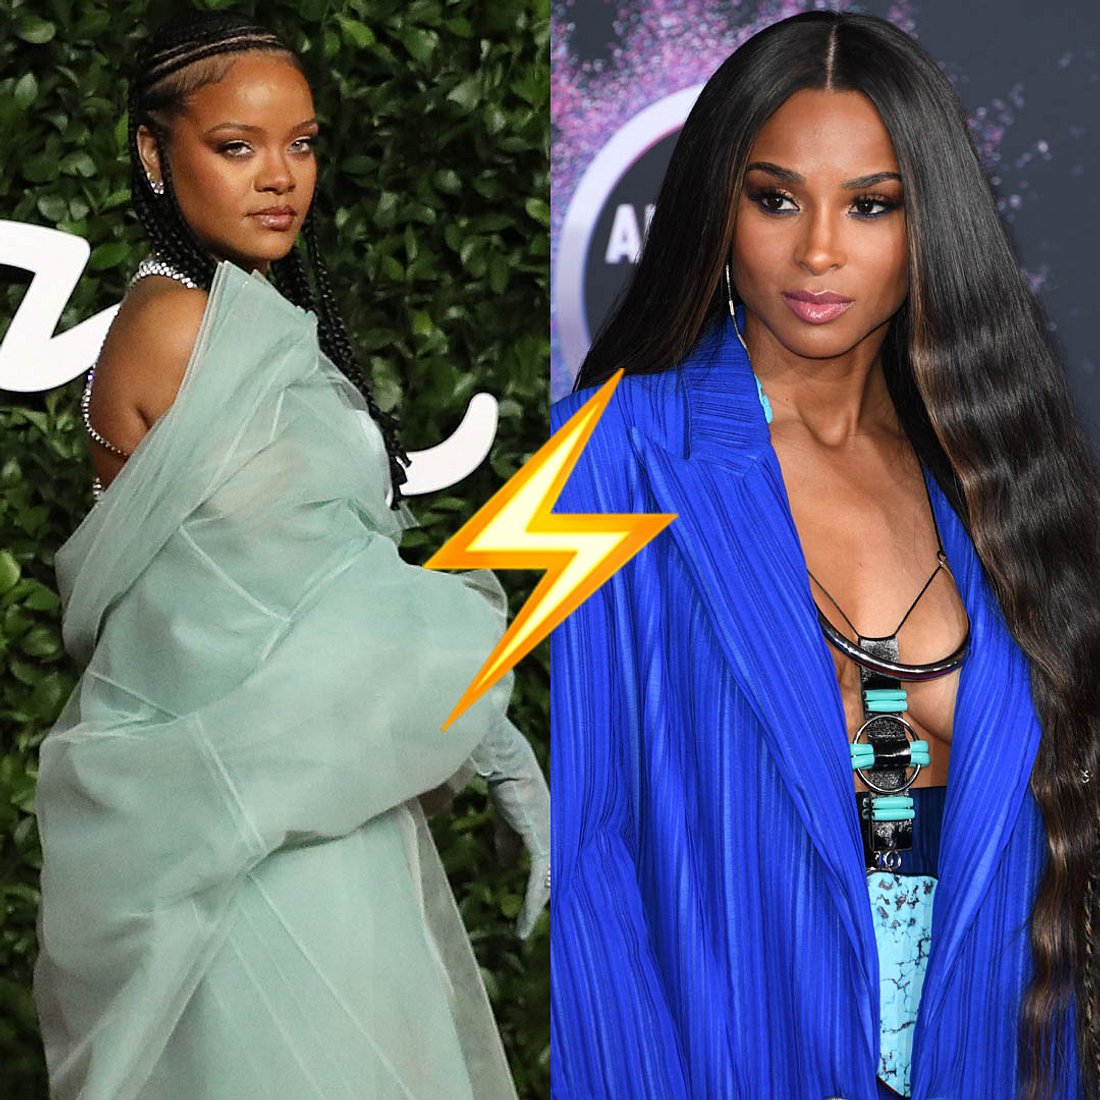 Stars beschimpfen Stars: Rihanna disst Ciara nach Angriff